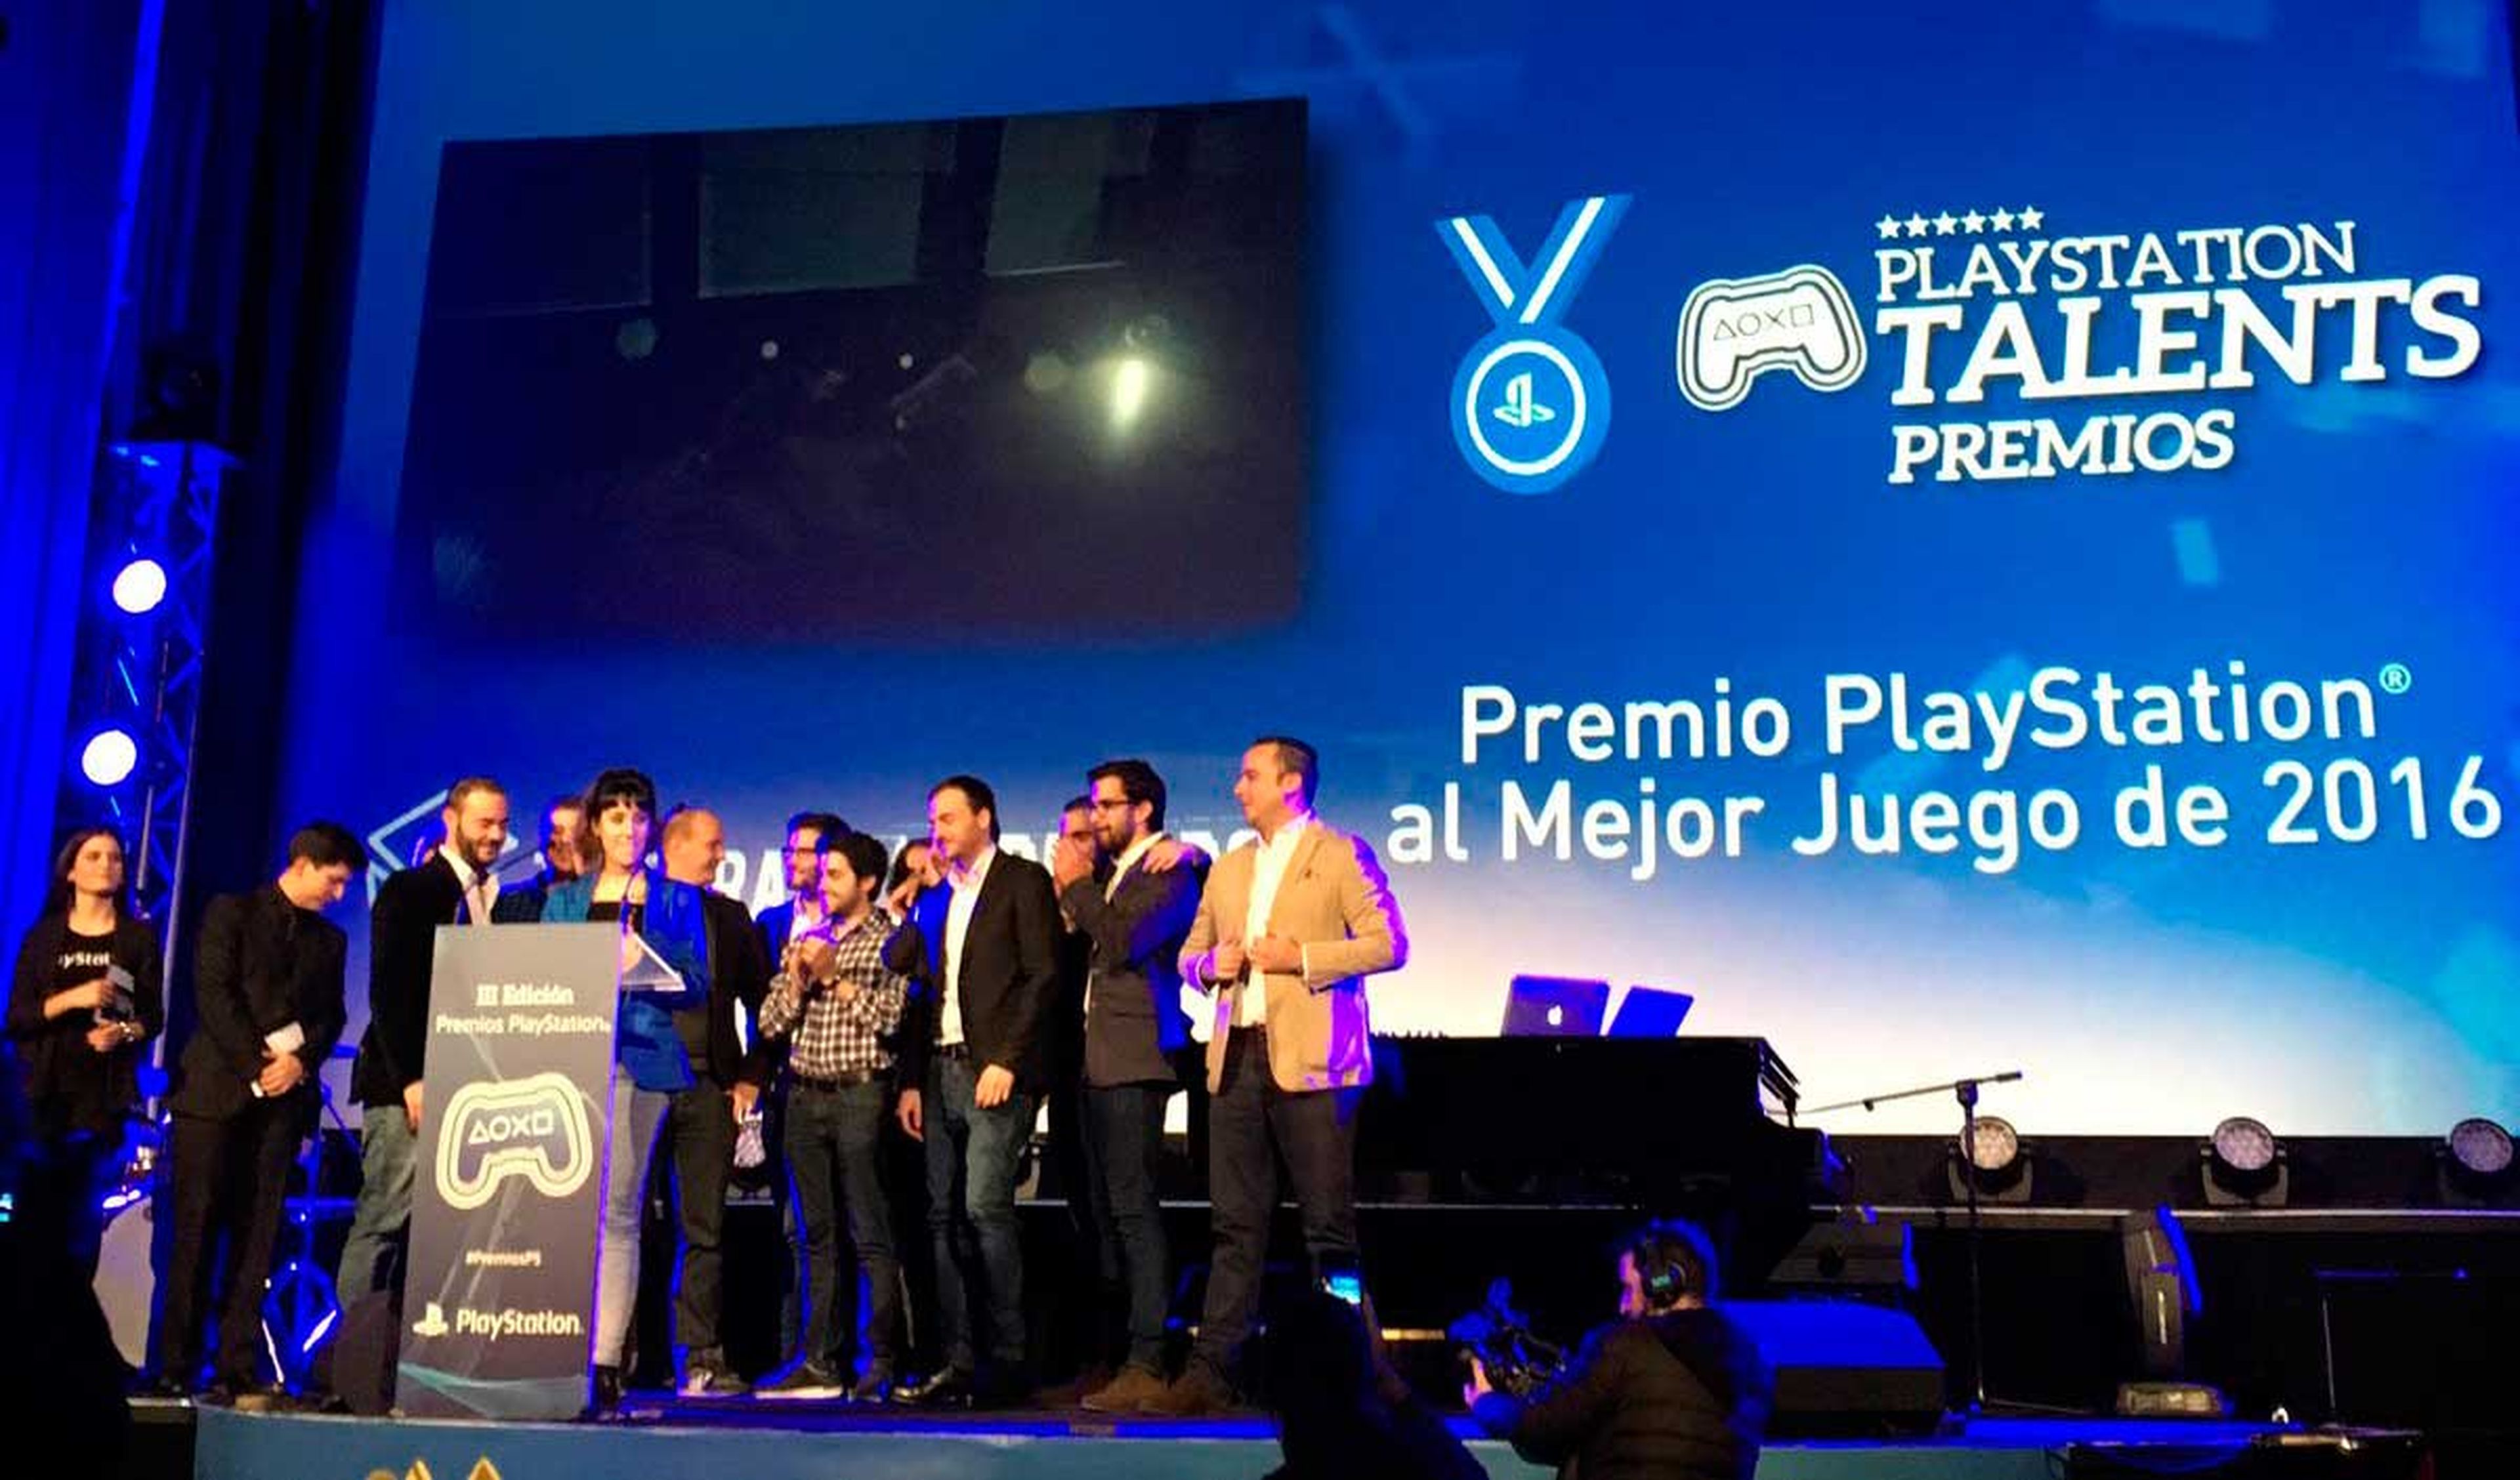 El equipo al completo, menos uno de los miembros que no pudo asistir por motivos personales, subió a recoger el galardón que les acredita como el 'Mejor juego 2016' en los Premios PlayStation.